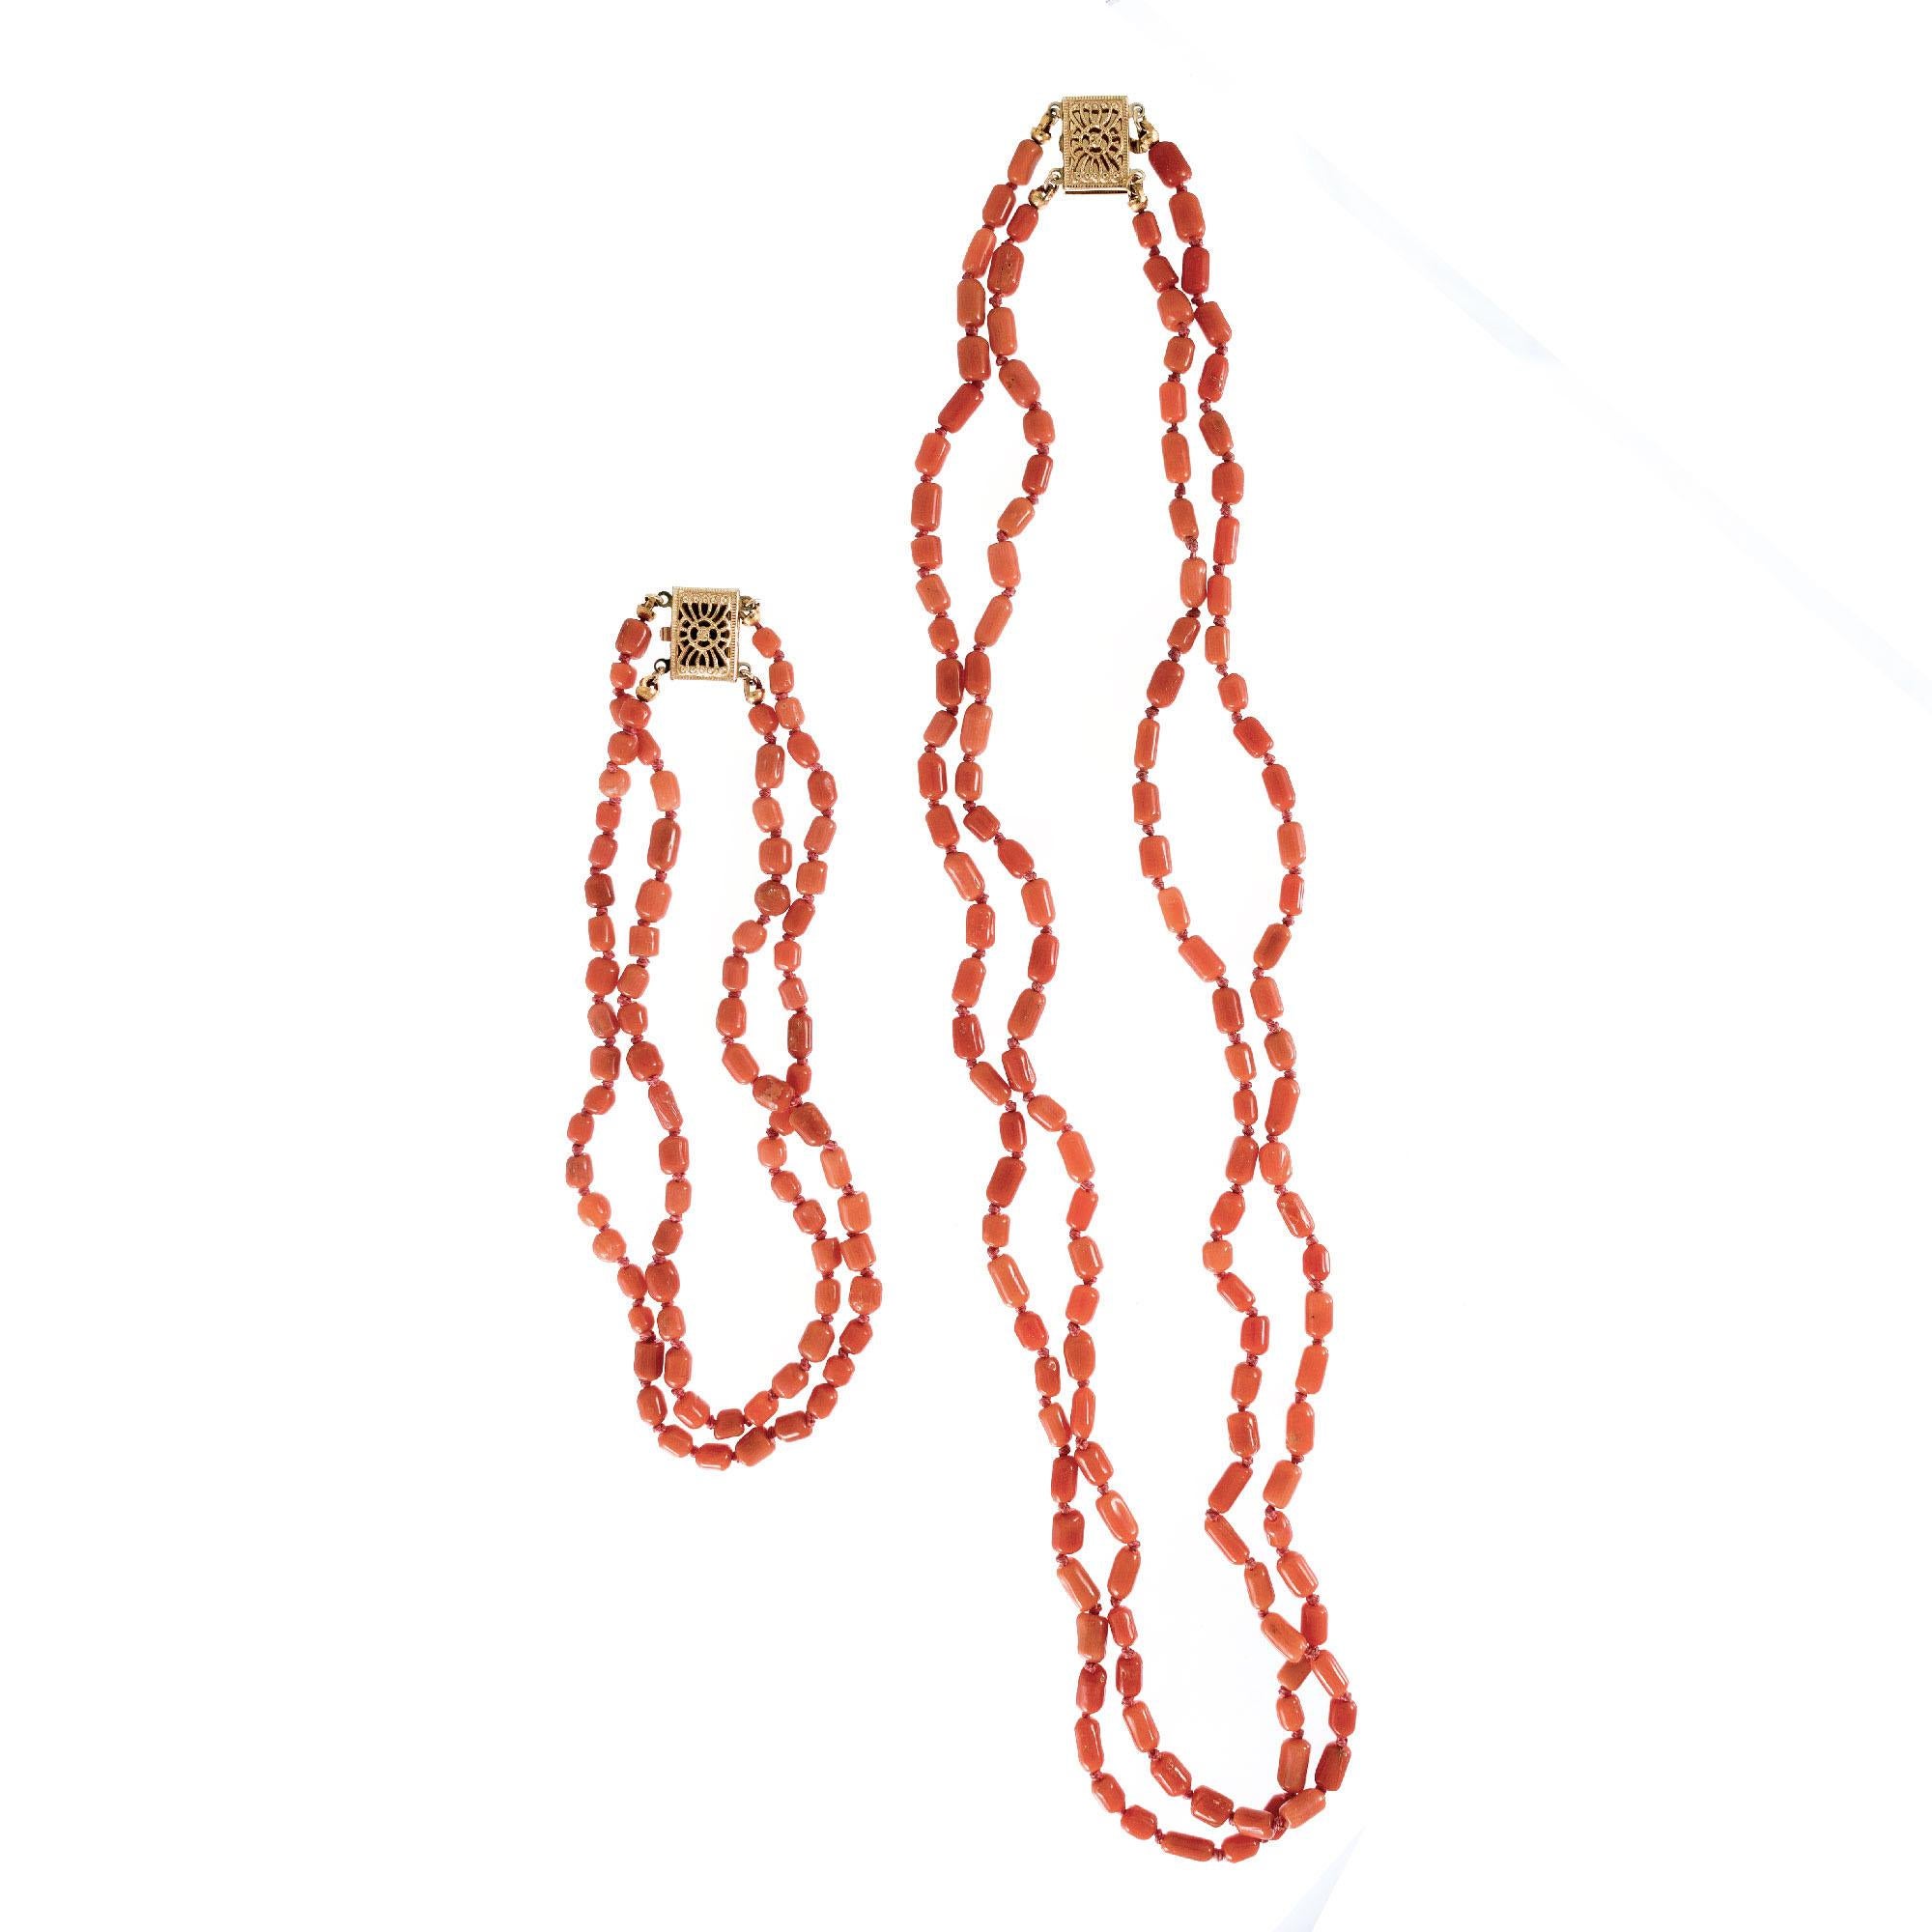 Natürliche unbehandelte Koralle GIA-zertifiziert 16,5 passenden zwei Strang Halskette mit einem 9-Zoll-Verlängerung, um eine 25,5 Zoll lange Halskette oder als Armband getragen zu machen. 

Halskette:
137 Rötlich-orangefarbene Korallenperlen